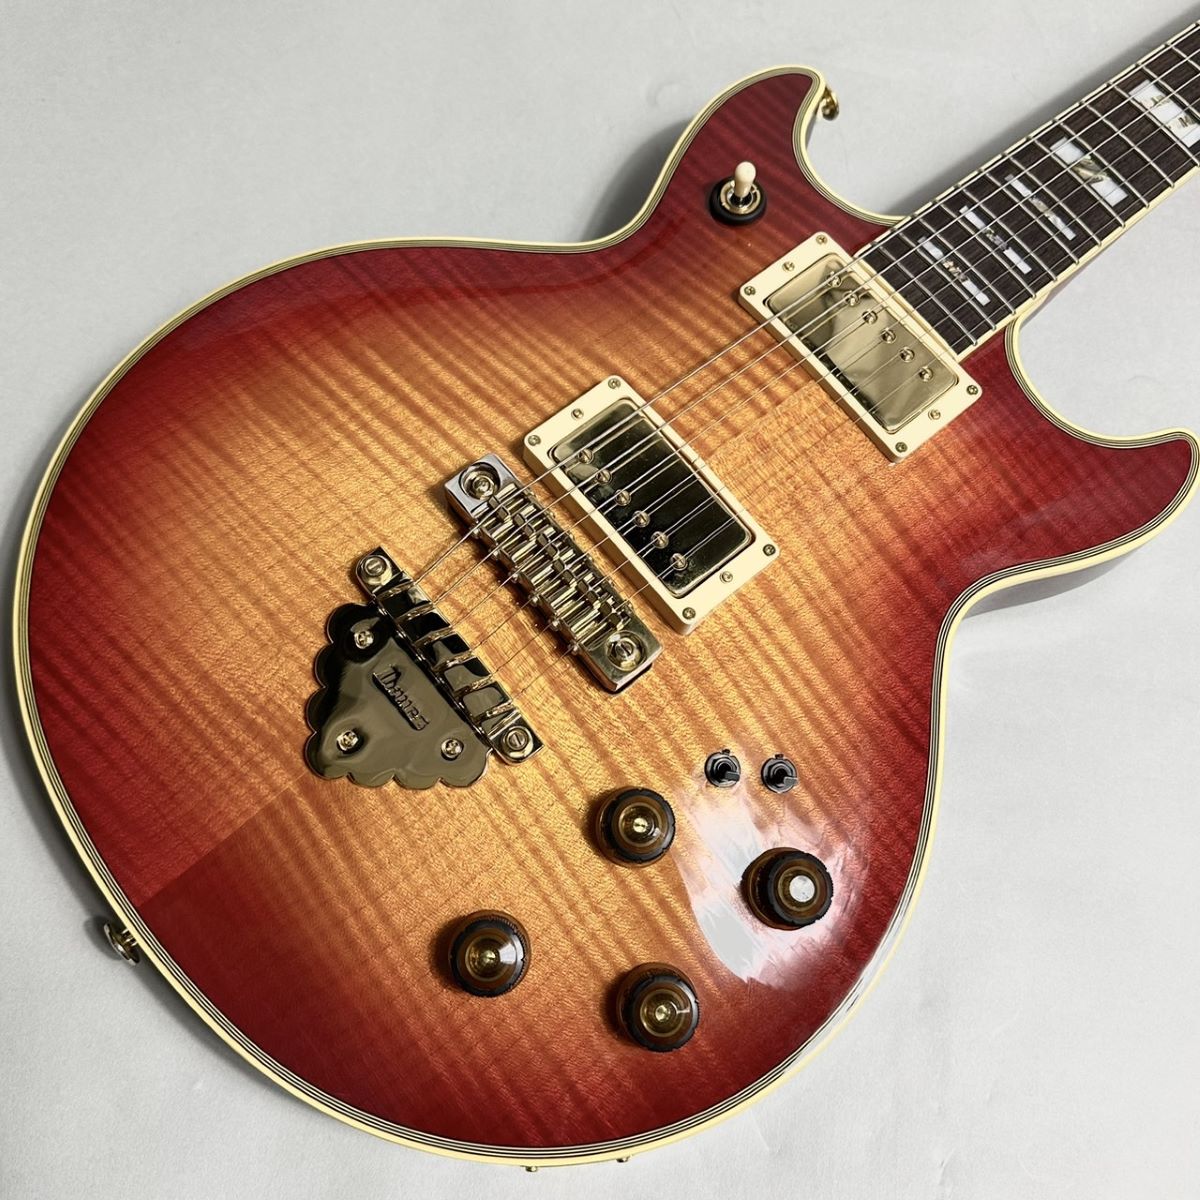 アイバニーズギターar300値下げ60000円 - 茨城県の楽器